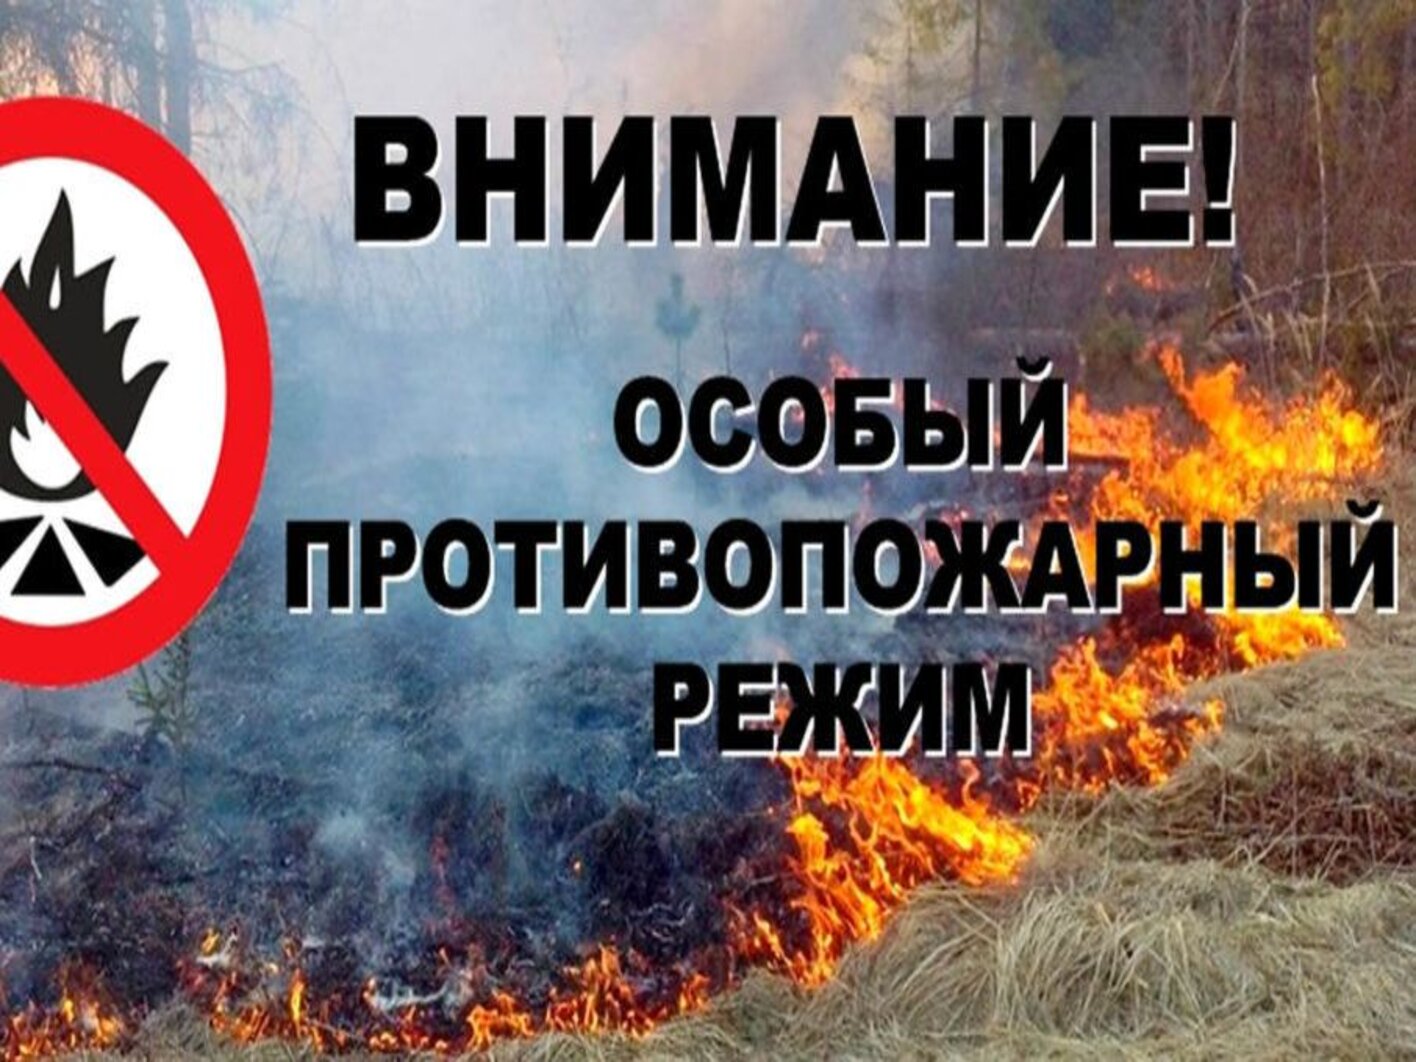 С 29 апреля на территории Черемховского района вводится особый противопожарный режим